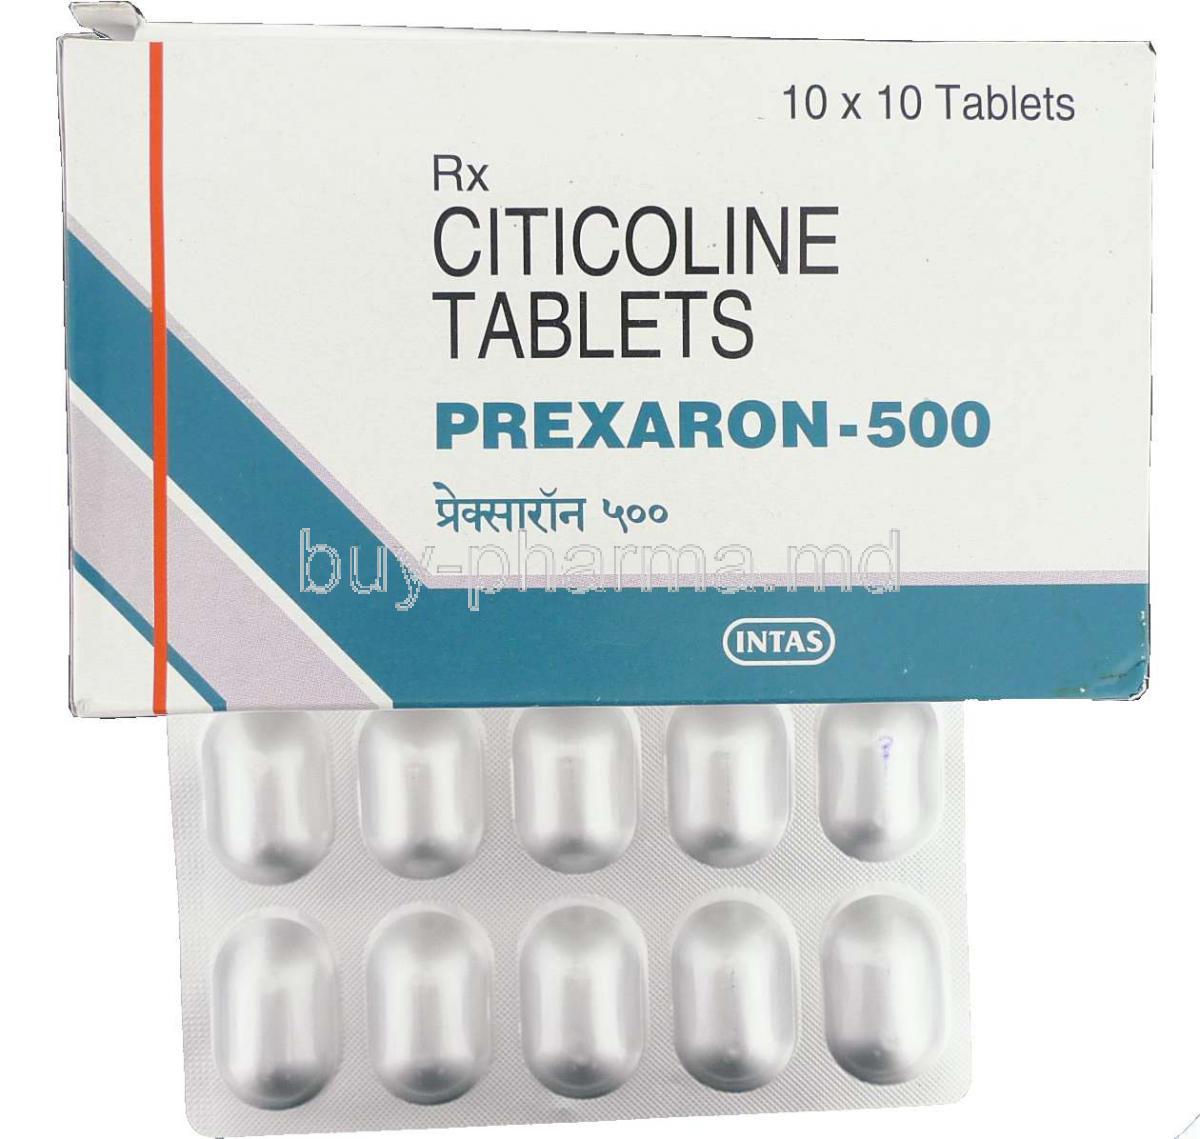 Prexaron, Citicoline Tablet And Box